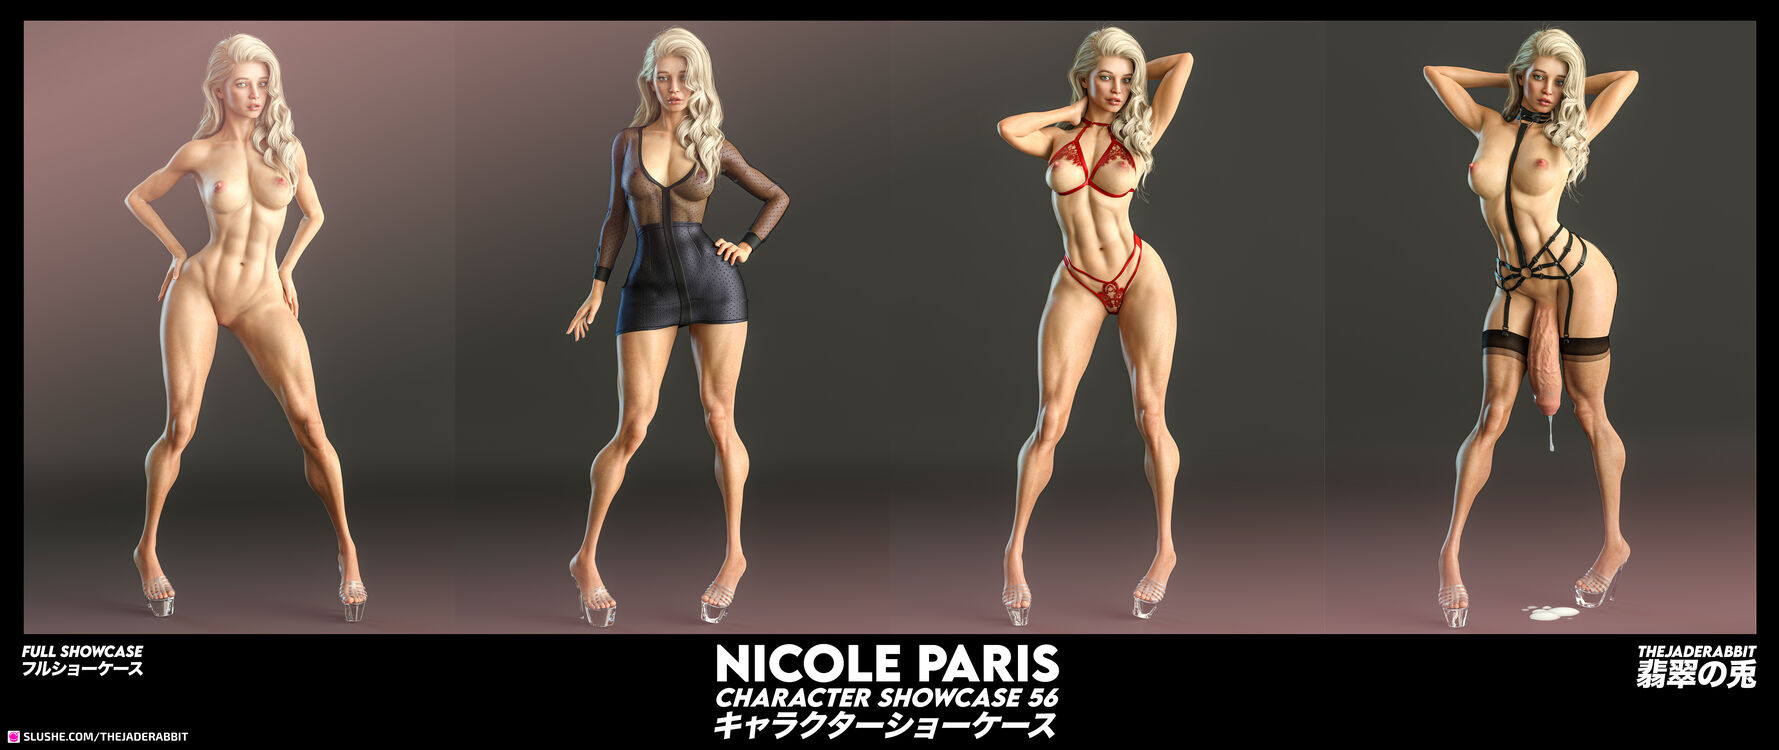 056 - Nicole Paris - Full Showcase